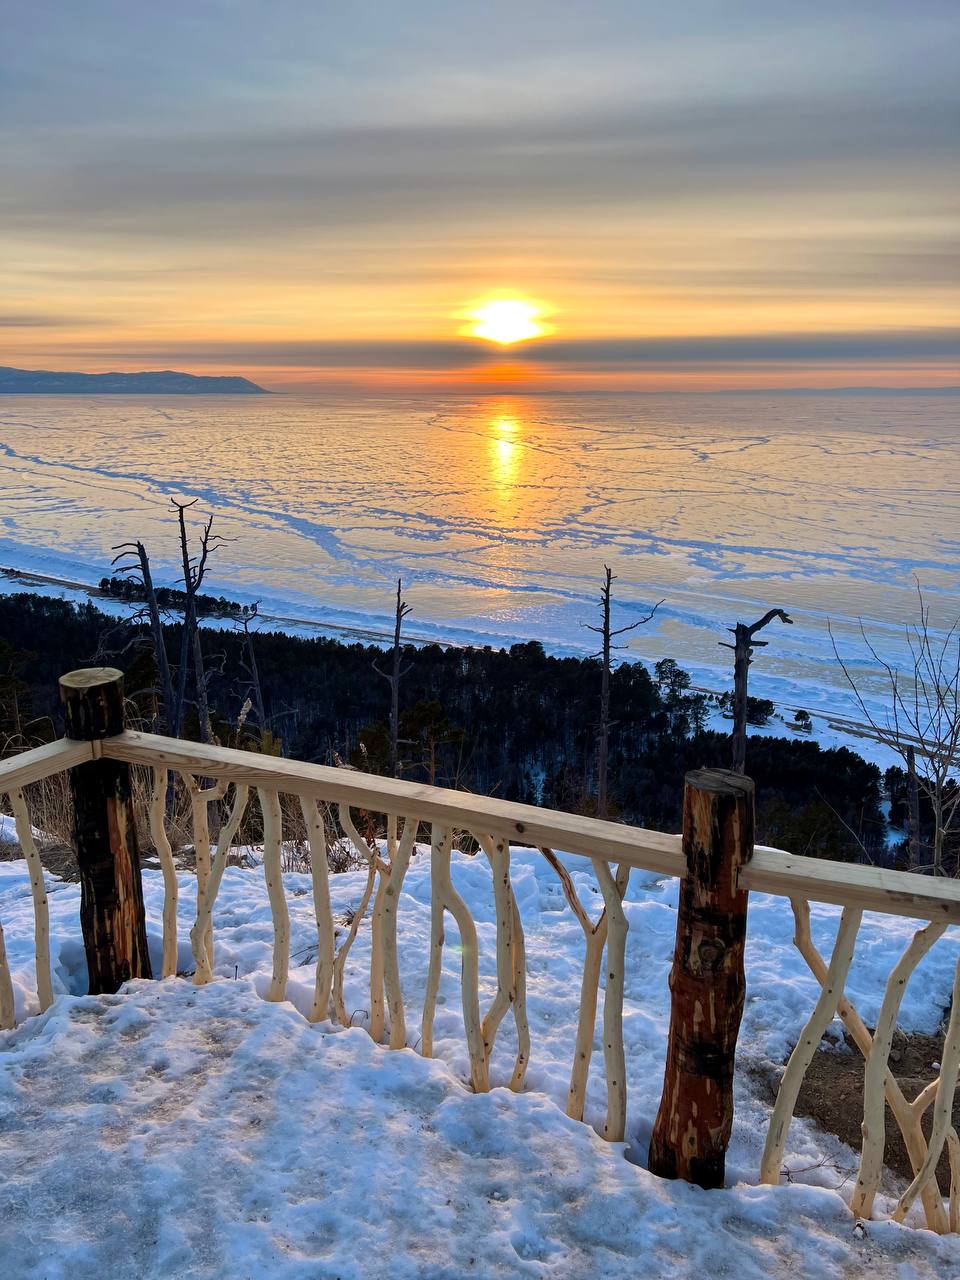 Фото В Бурятии на берегу Байкала открылась смотровая площадка с завораживающим видом